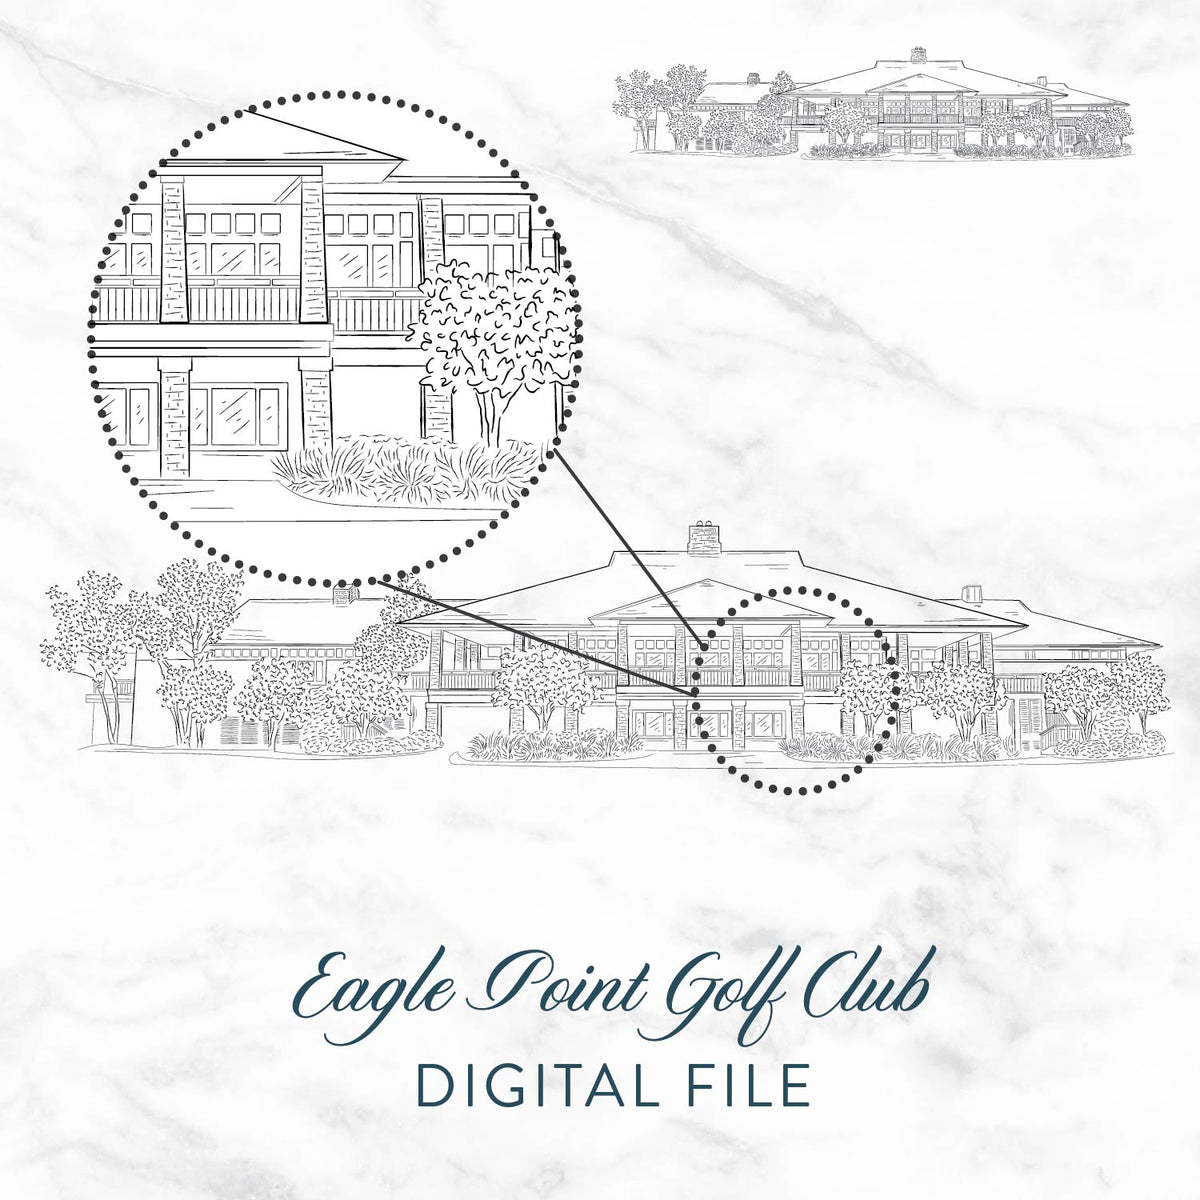 Eagle Point Golf Club Sketch Digital File by Scotti Cline Designs